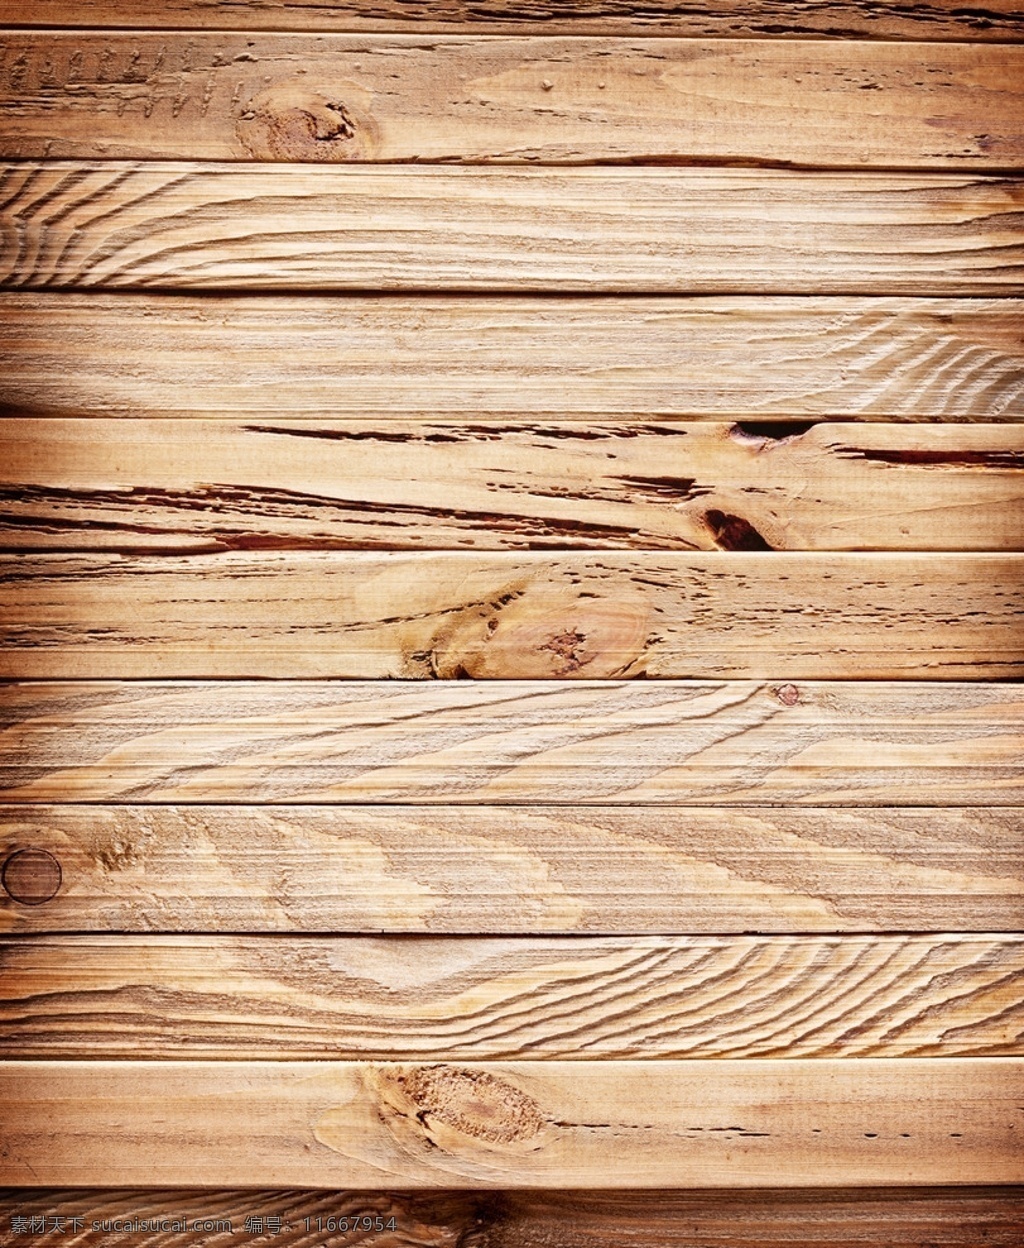 木材质 木头 木板 地板 木质纹理 底纹边框 背景底纹